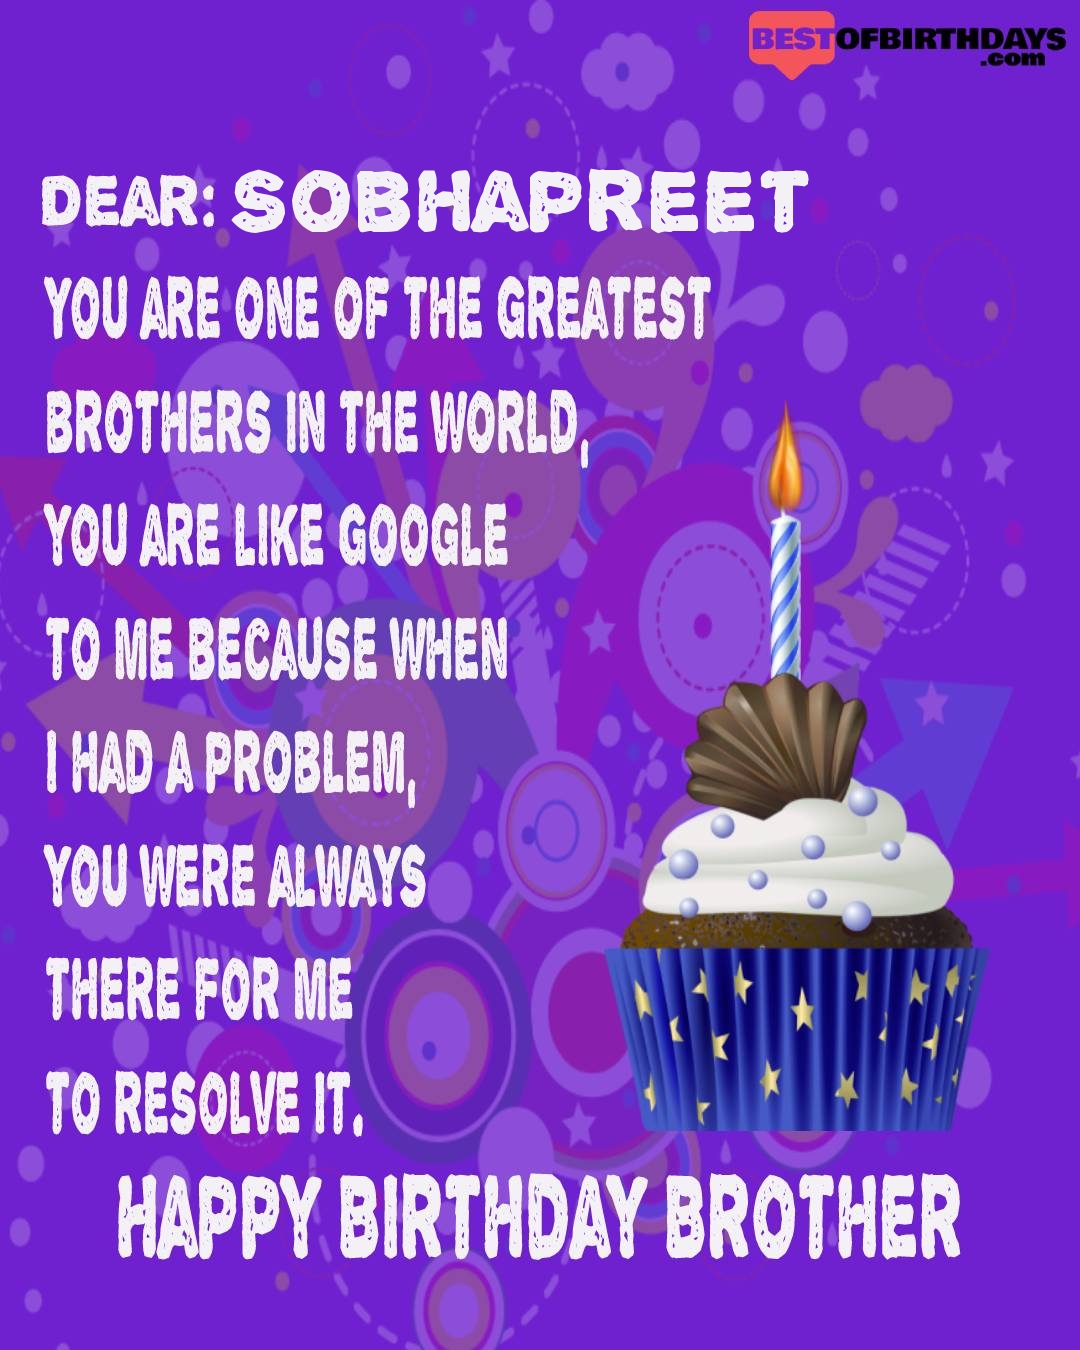 Happy birthday sobhapreet bhai brother bro